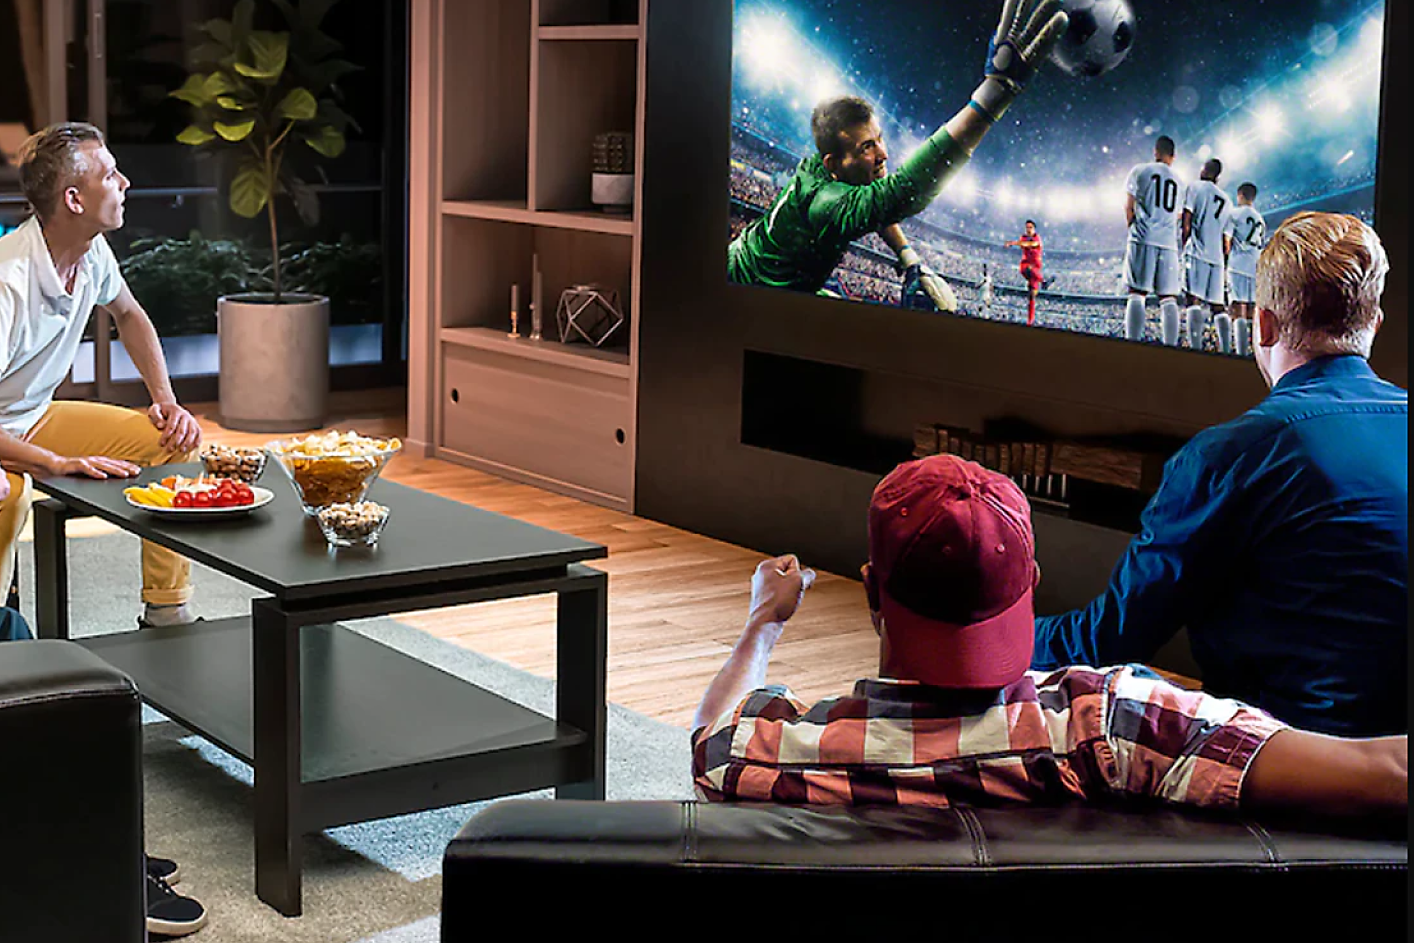 Trije moški gledajo nogomet na televizorju z velikim zaslonom